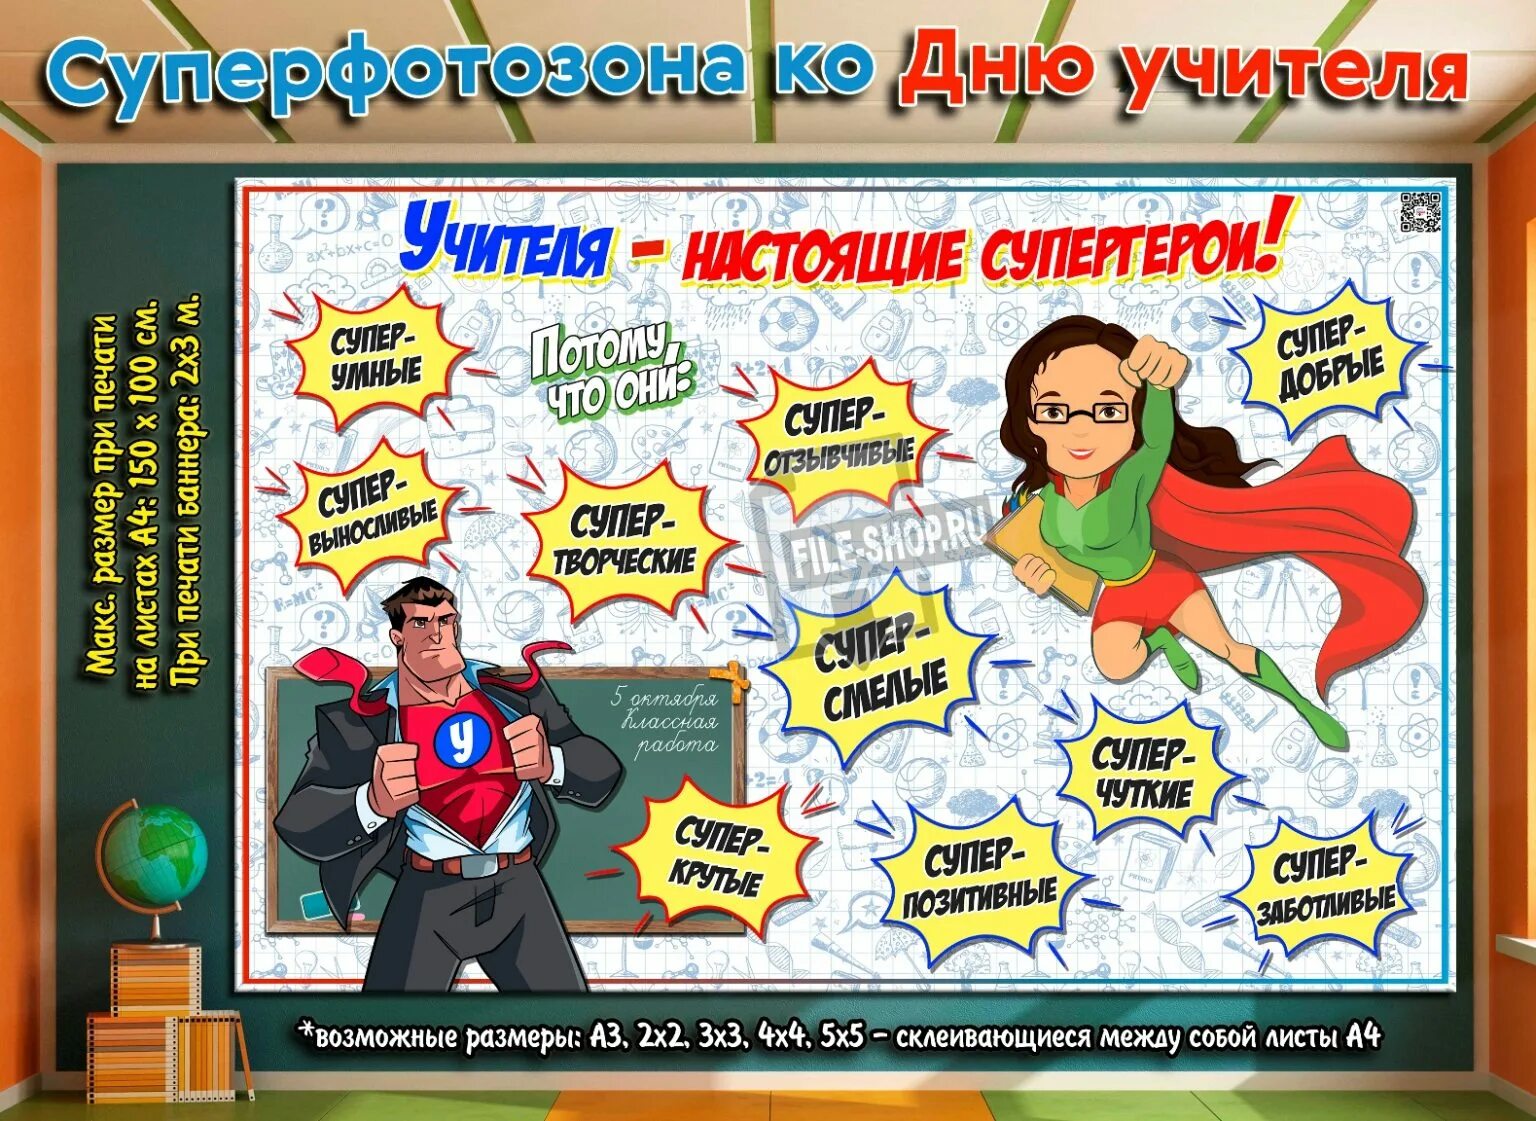 Плакат "с днем учителя!". Фотозона на день учителя. Учителя Супергерои. Учитель Супергерой.